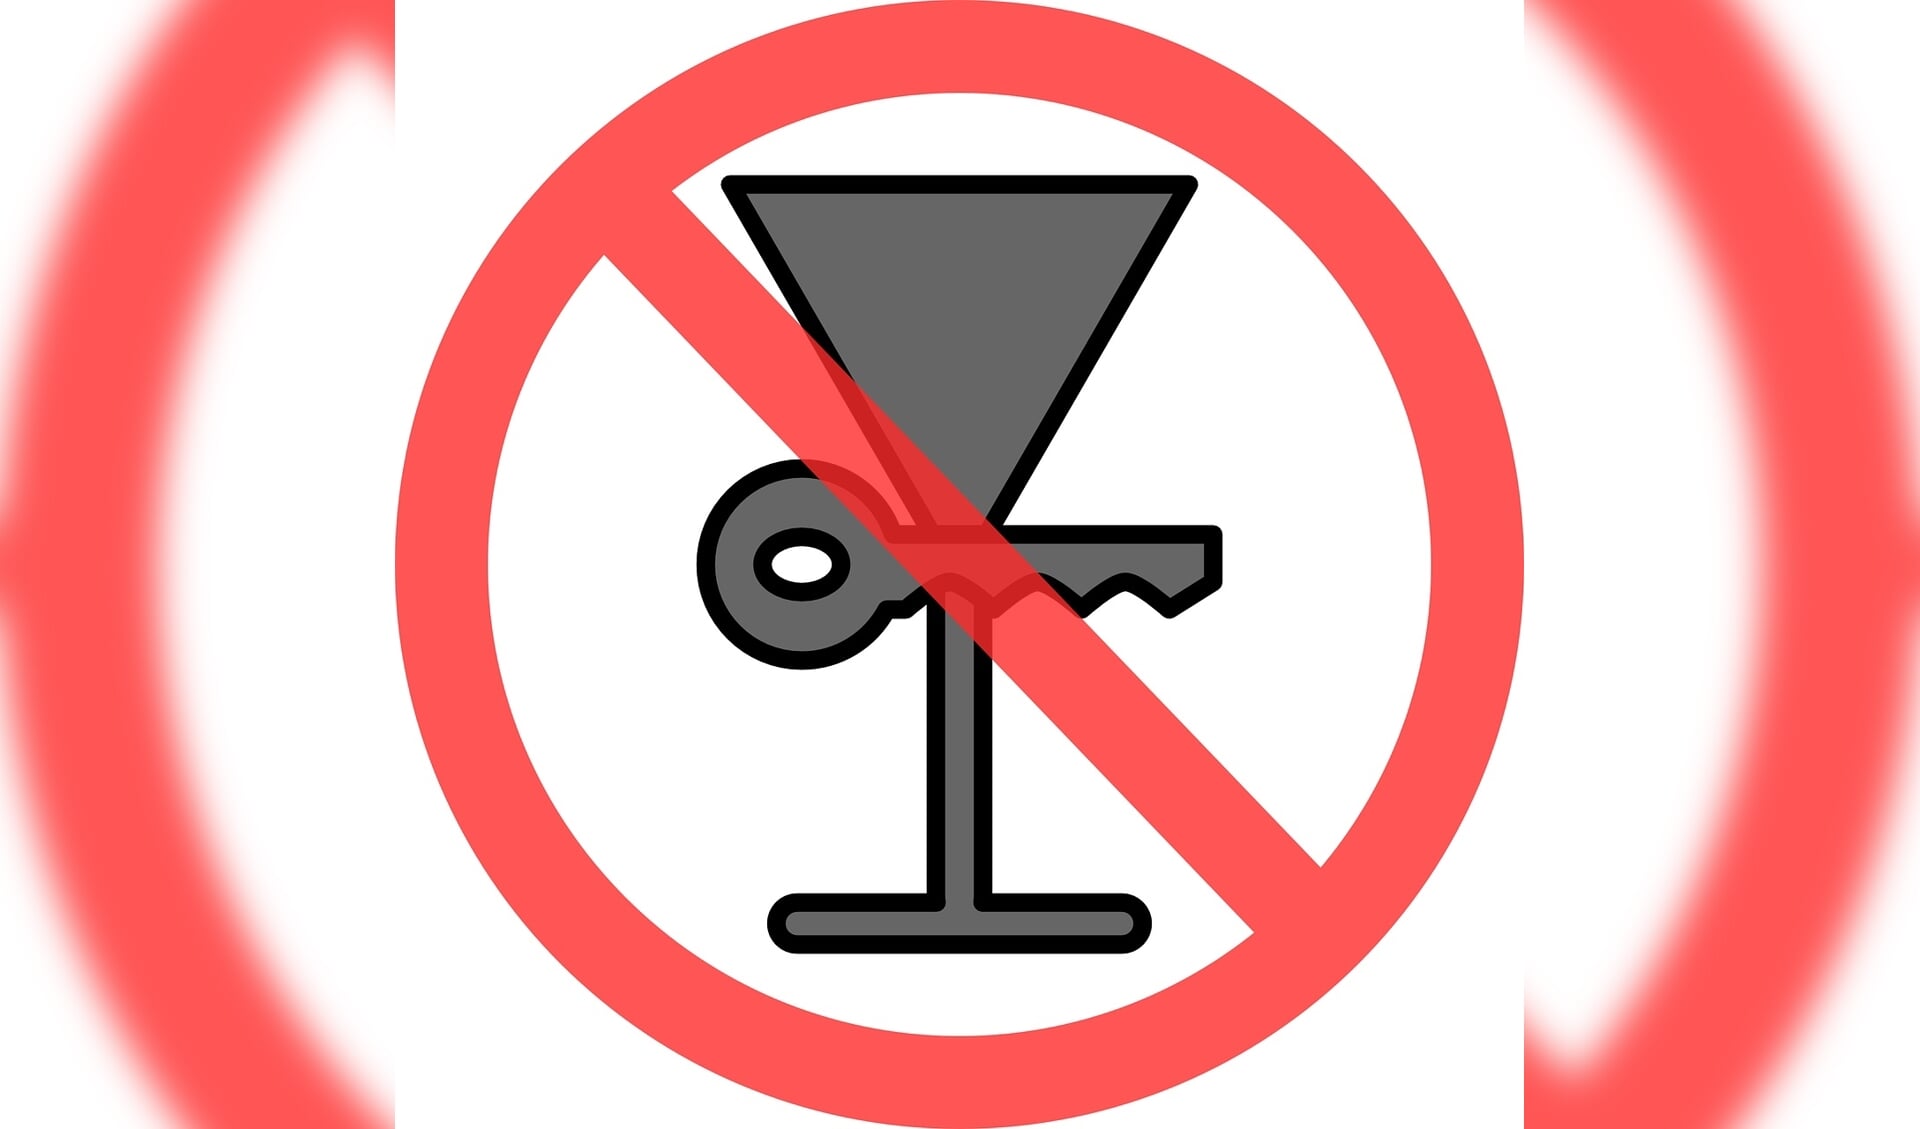 Combineer alcohol drinken en rijden niet. 